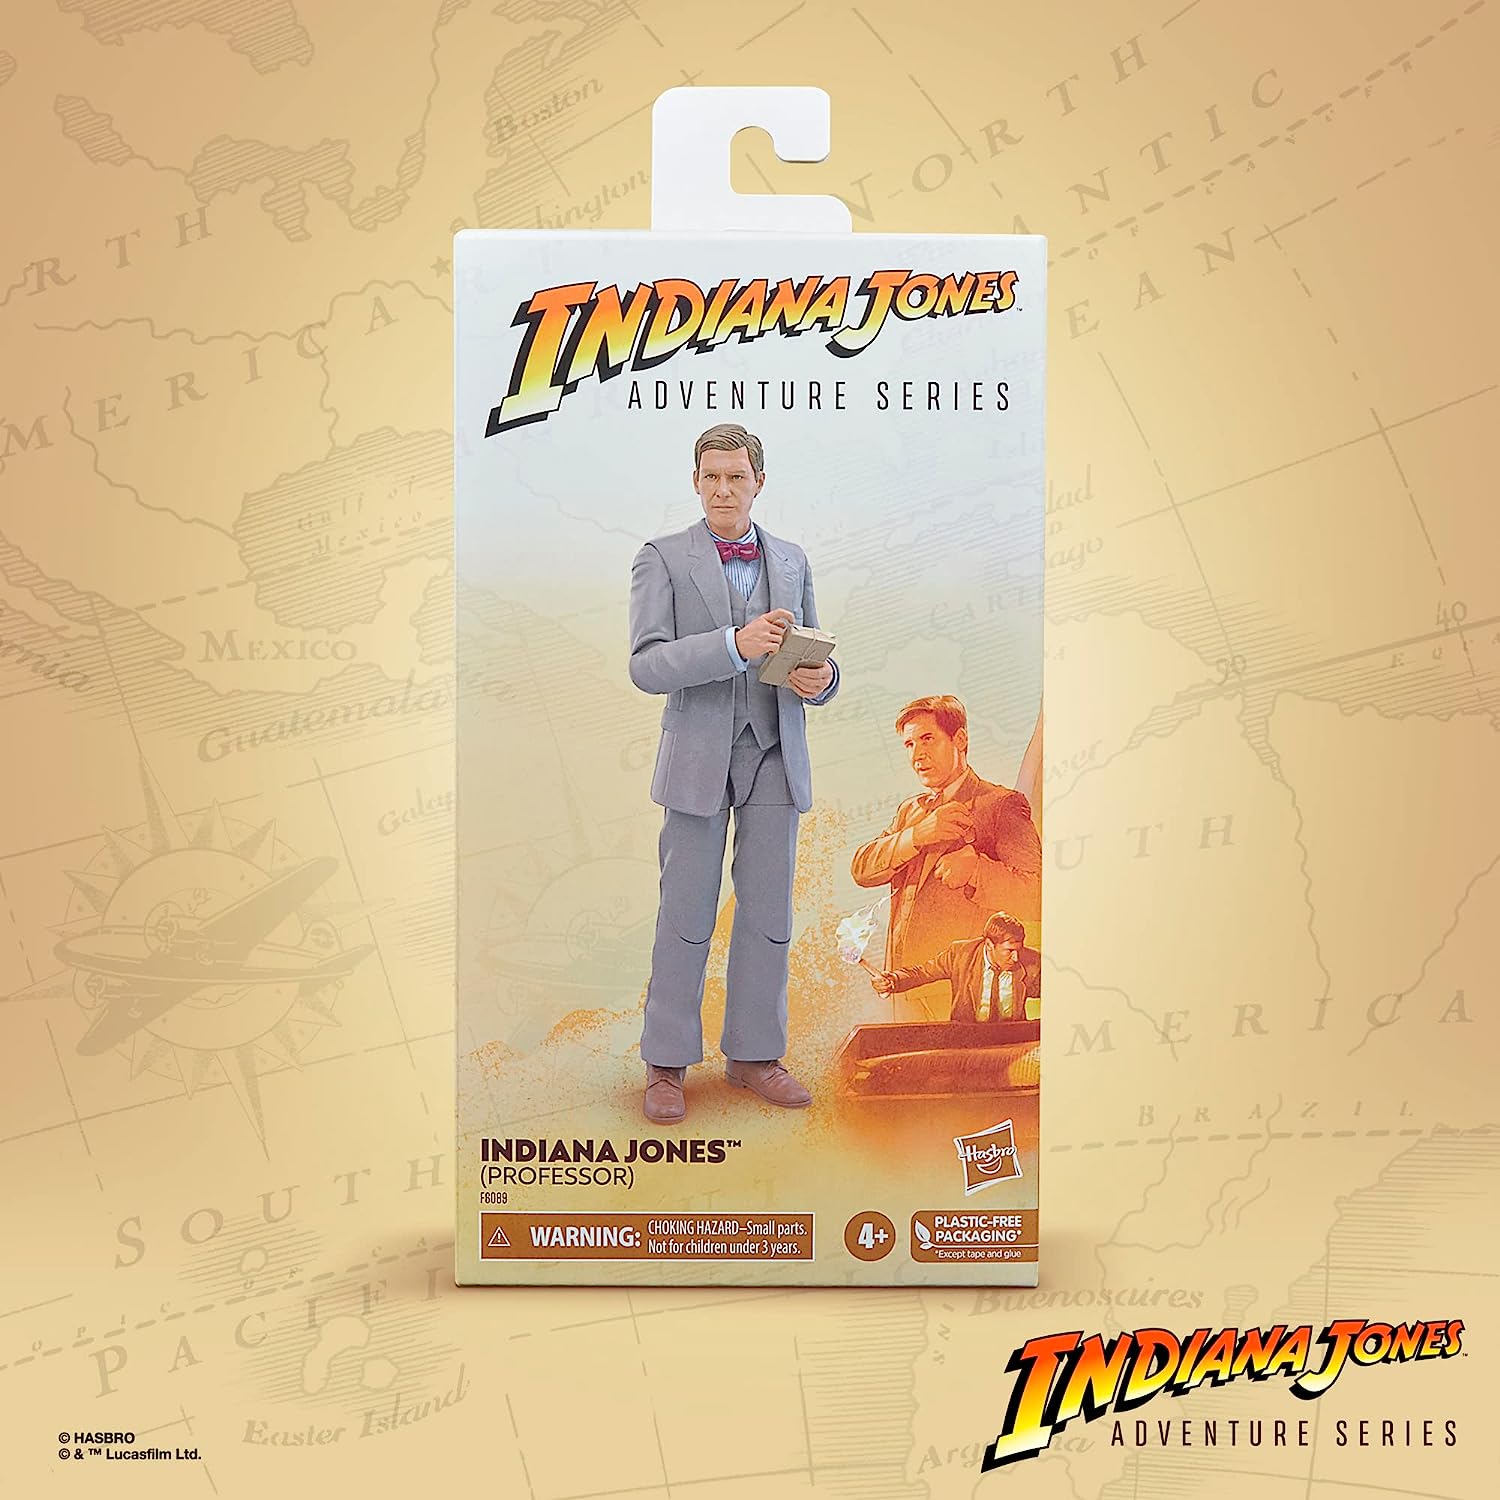 Indiana Jones Adventure Series Indiana Jones Professor 6-Inch Action Figure 正規品画像